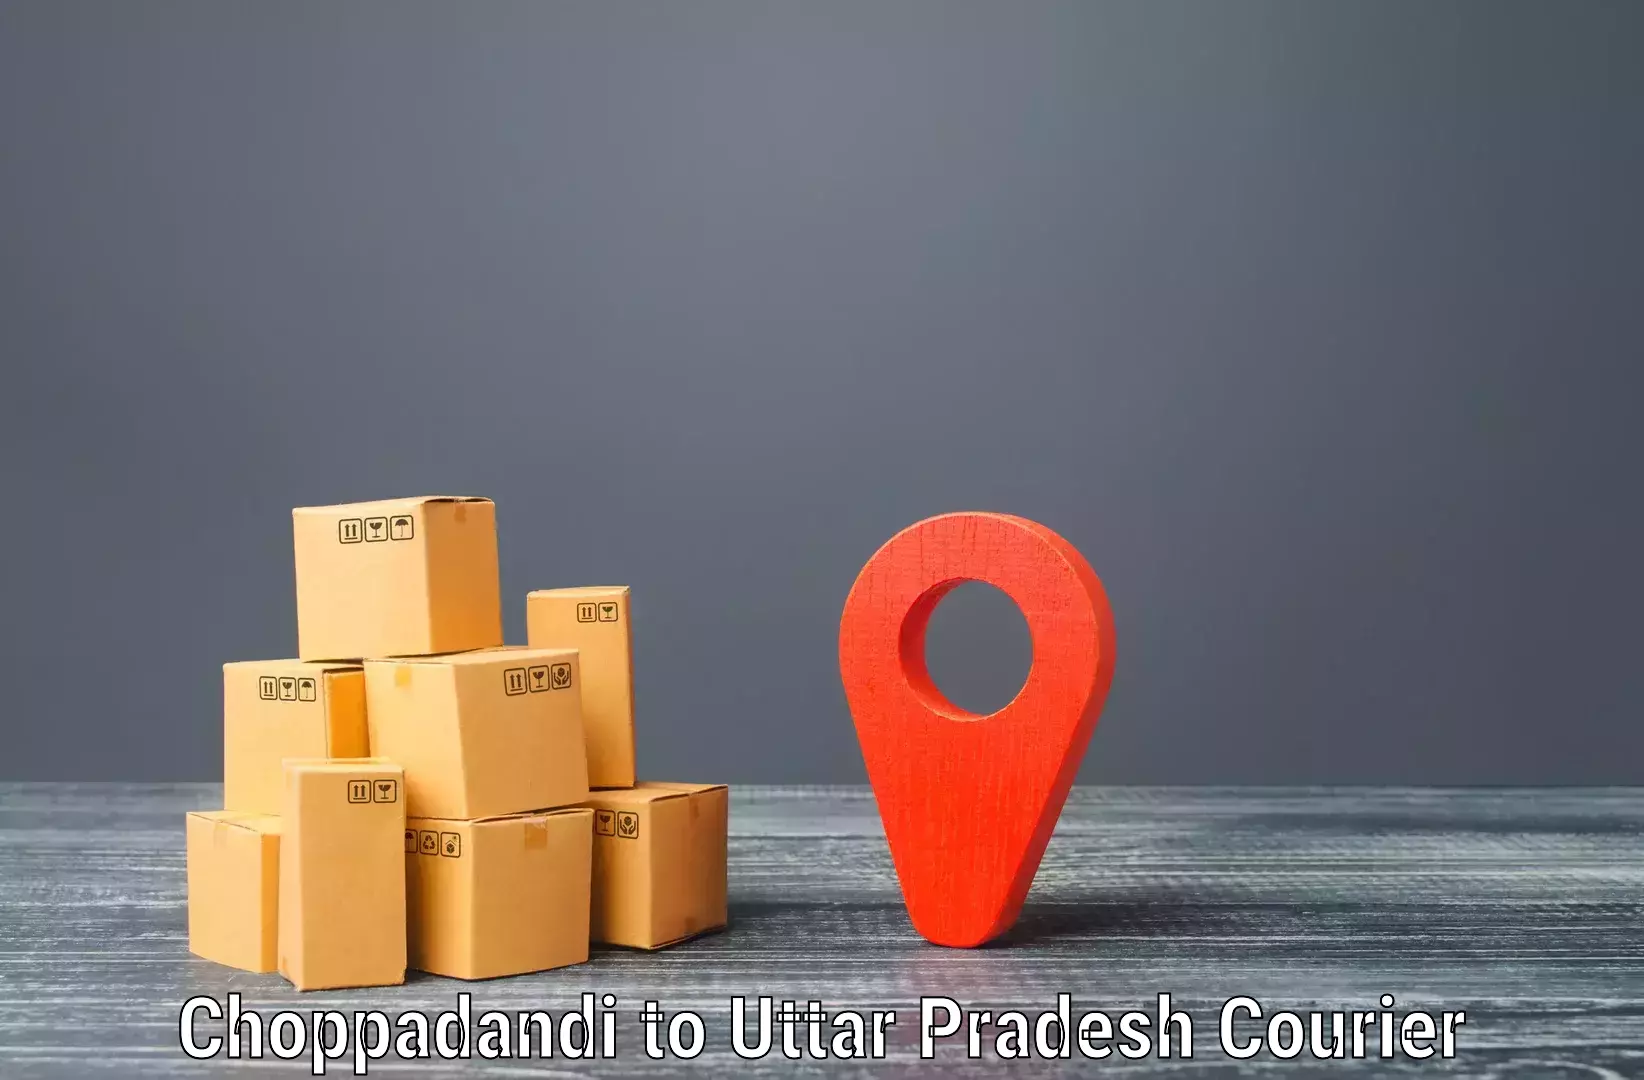 Dynamic parcel delivery in Choppadandi to Khadda